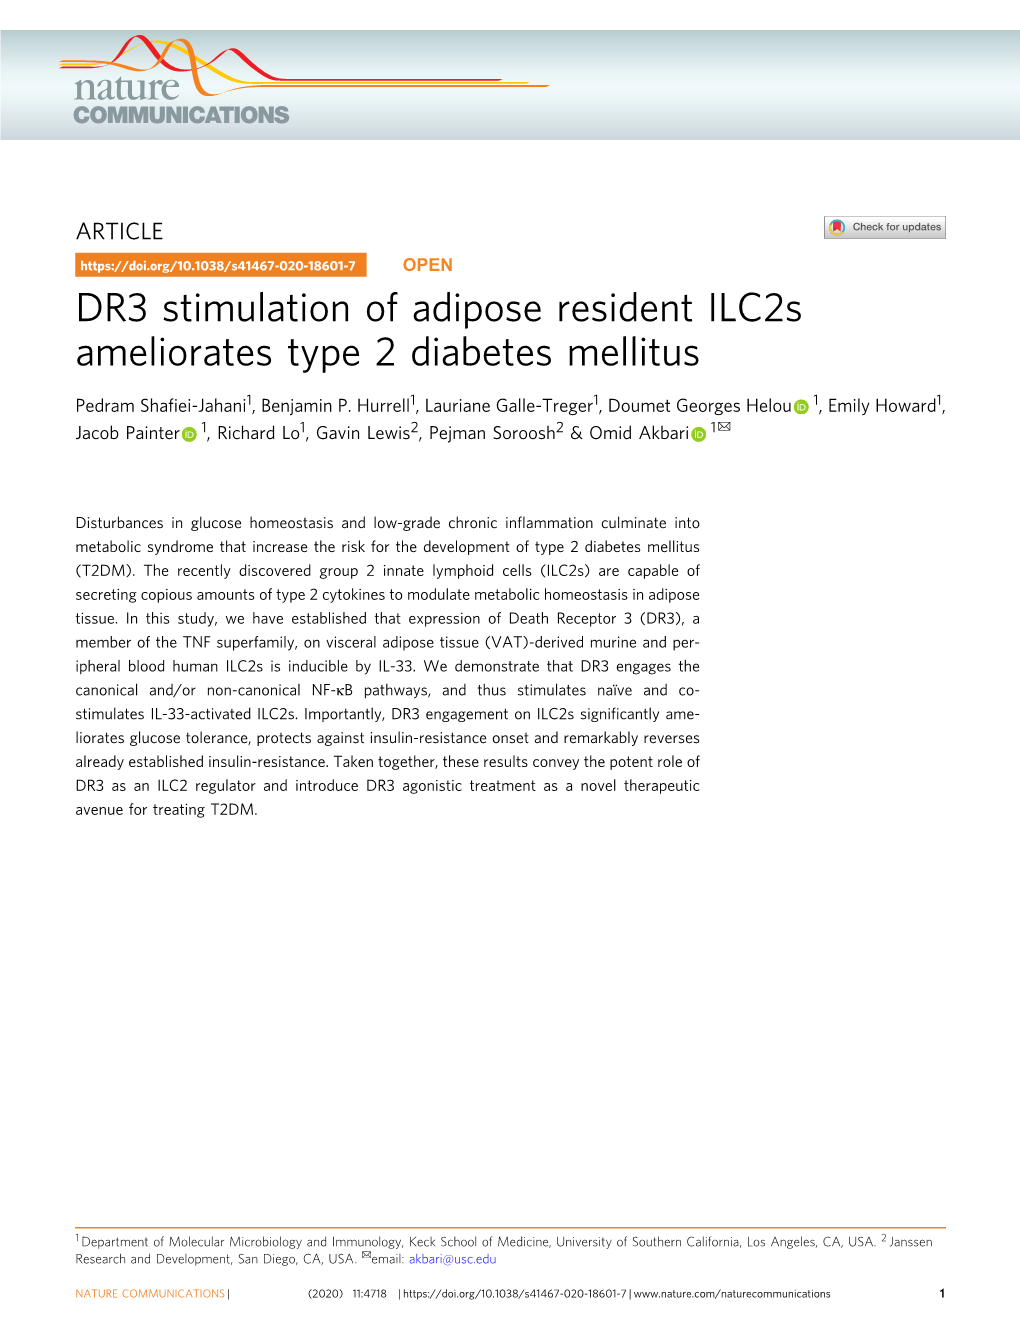 DR3 Stimulation of Adipose Resident Ilc2s Ameliorates Type 2 Diabetes Mellitus